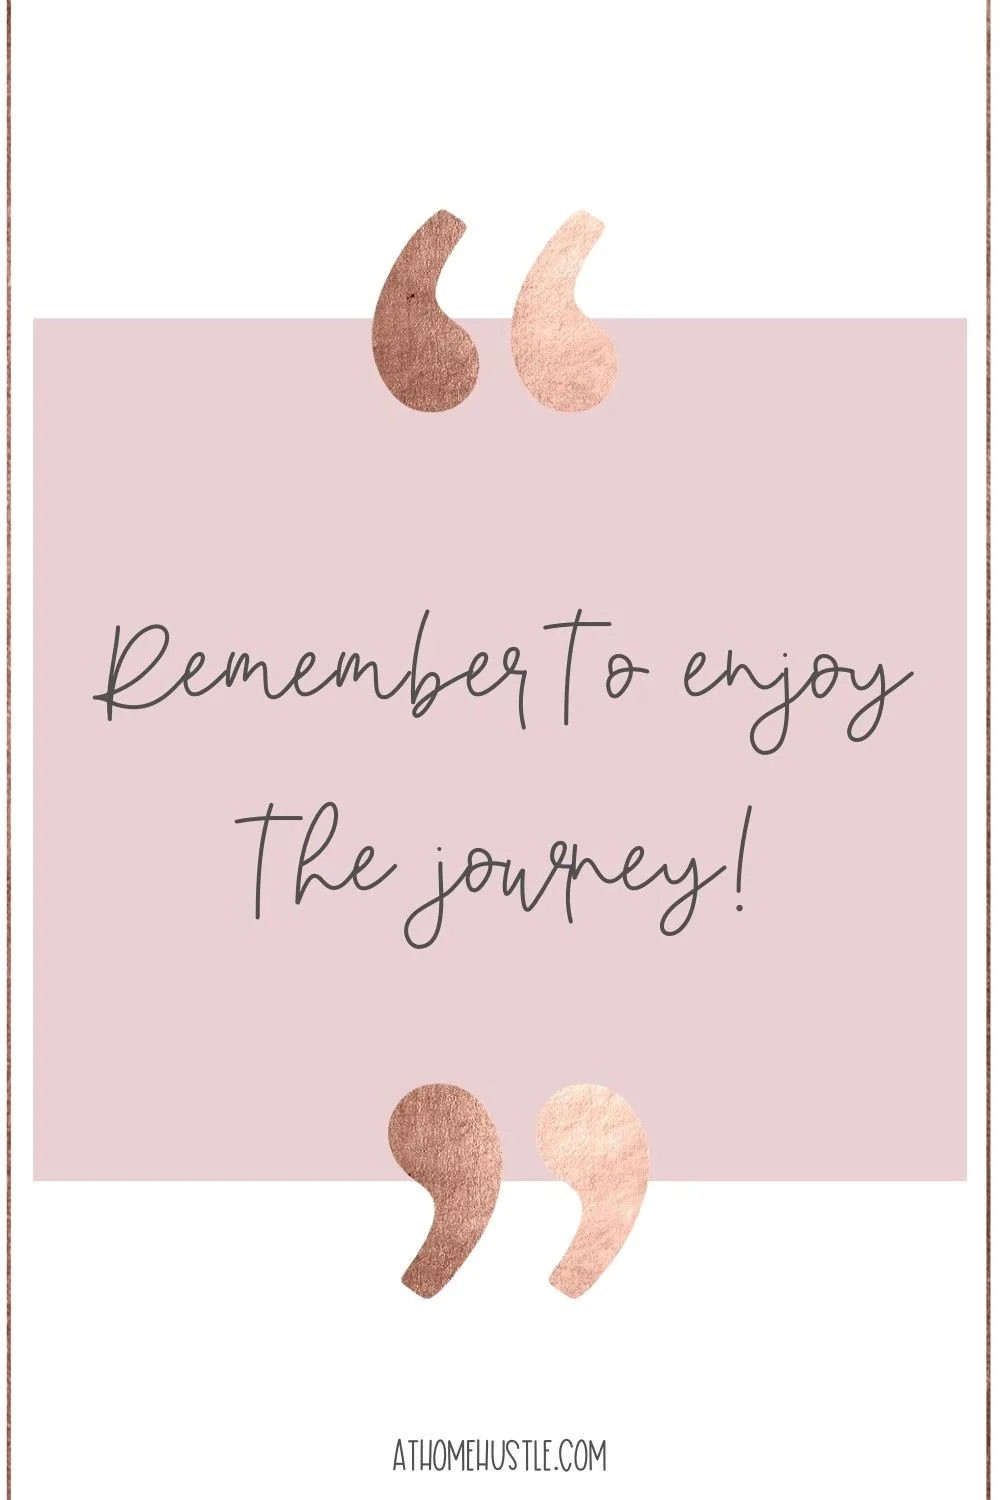 Enjoy the journey quote